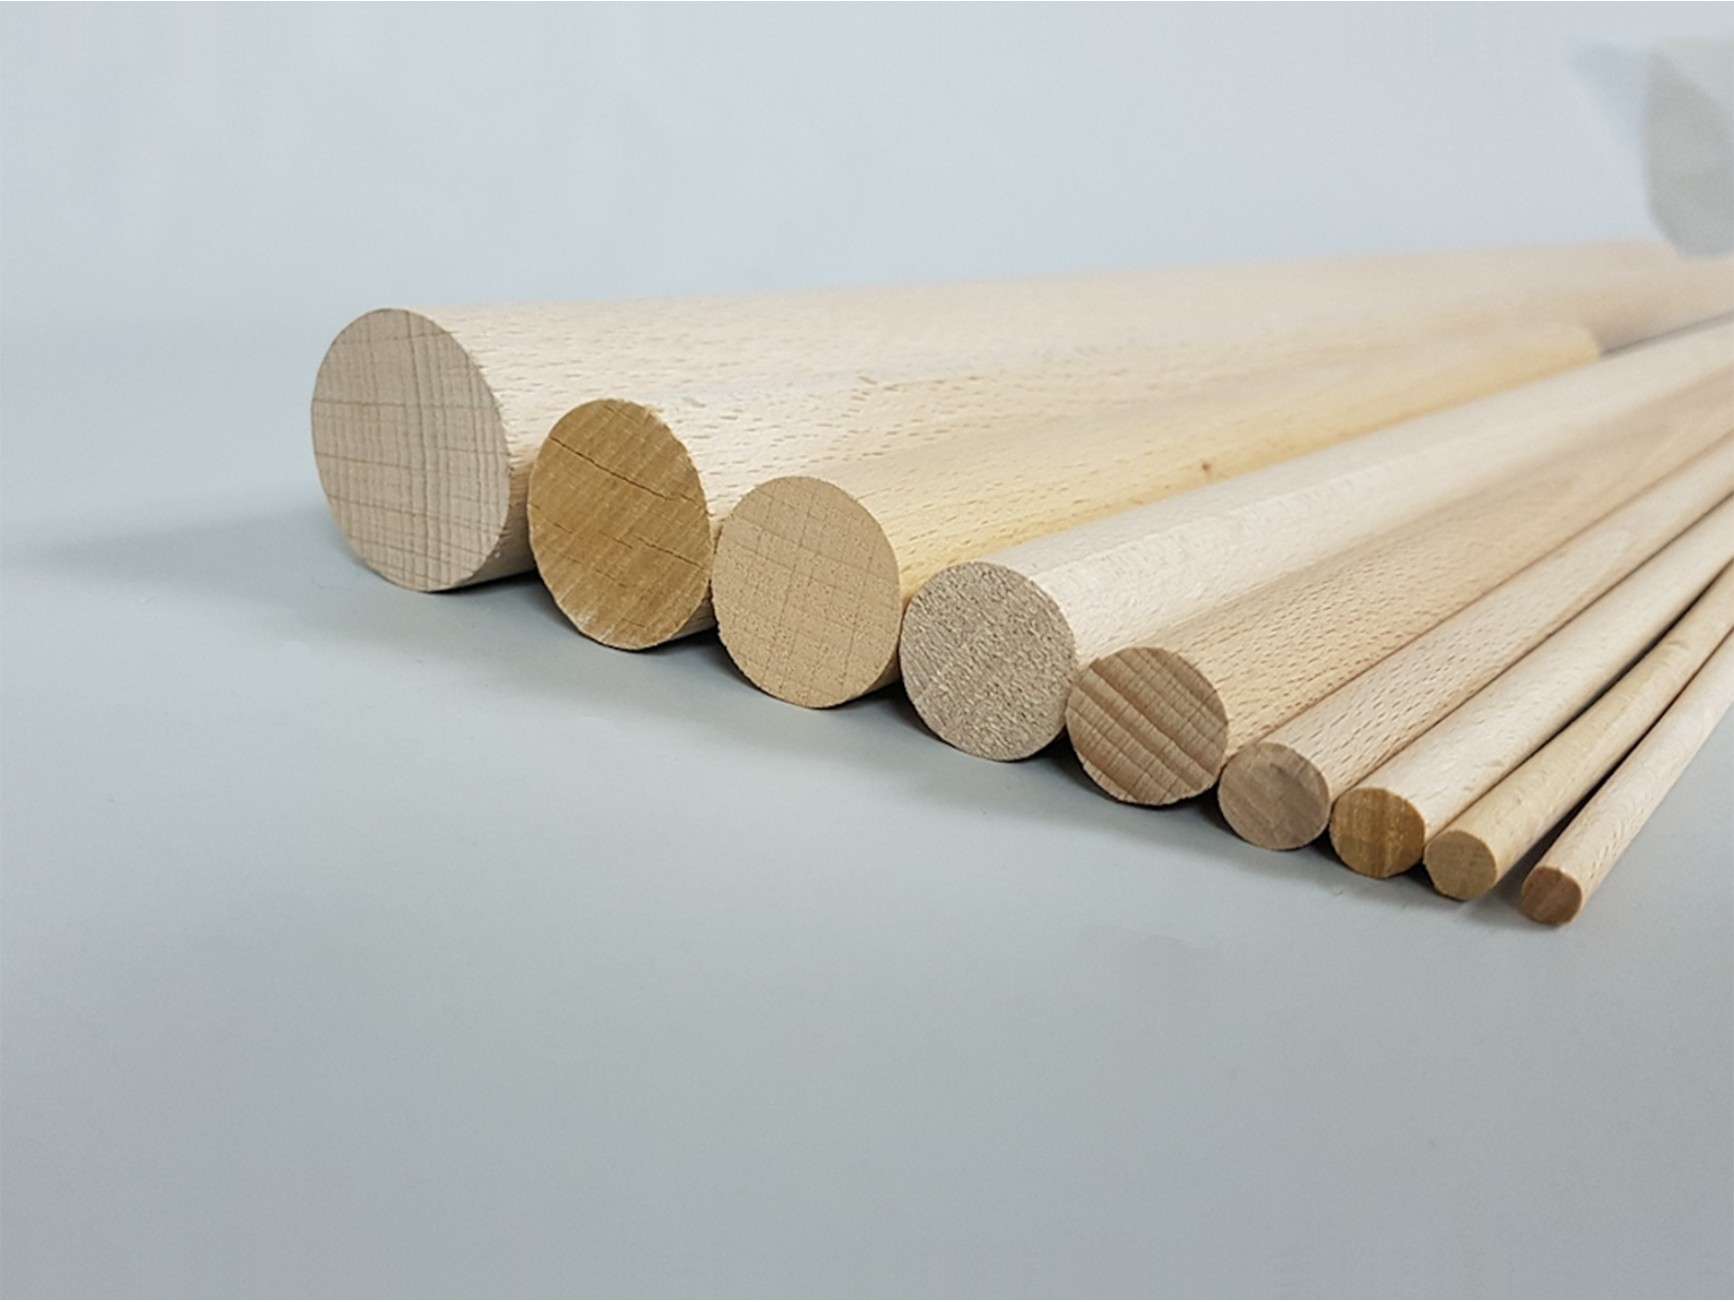 Palos de madera para manualidades, herramienta de 0,4 CM x 30 CM